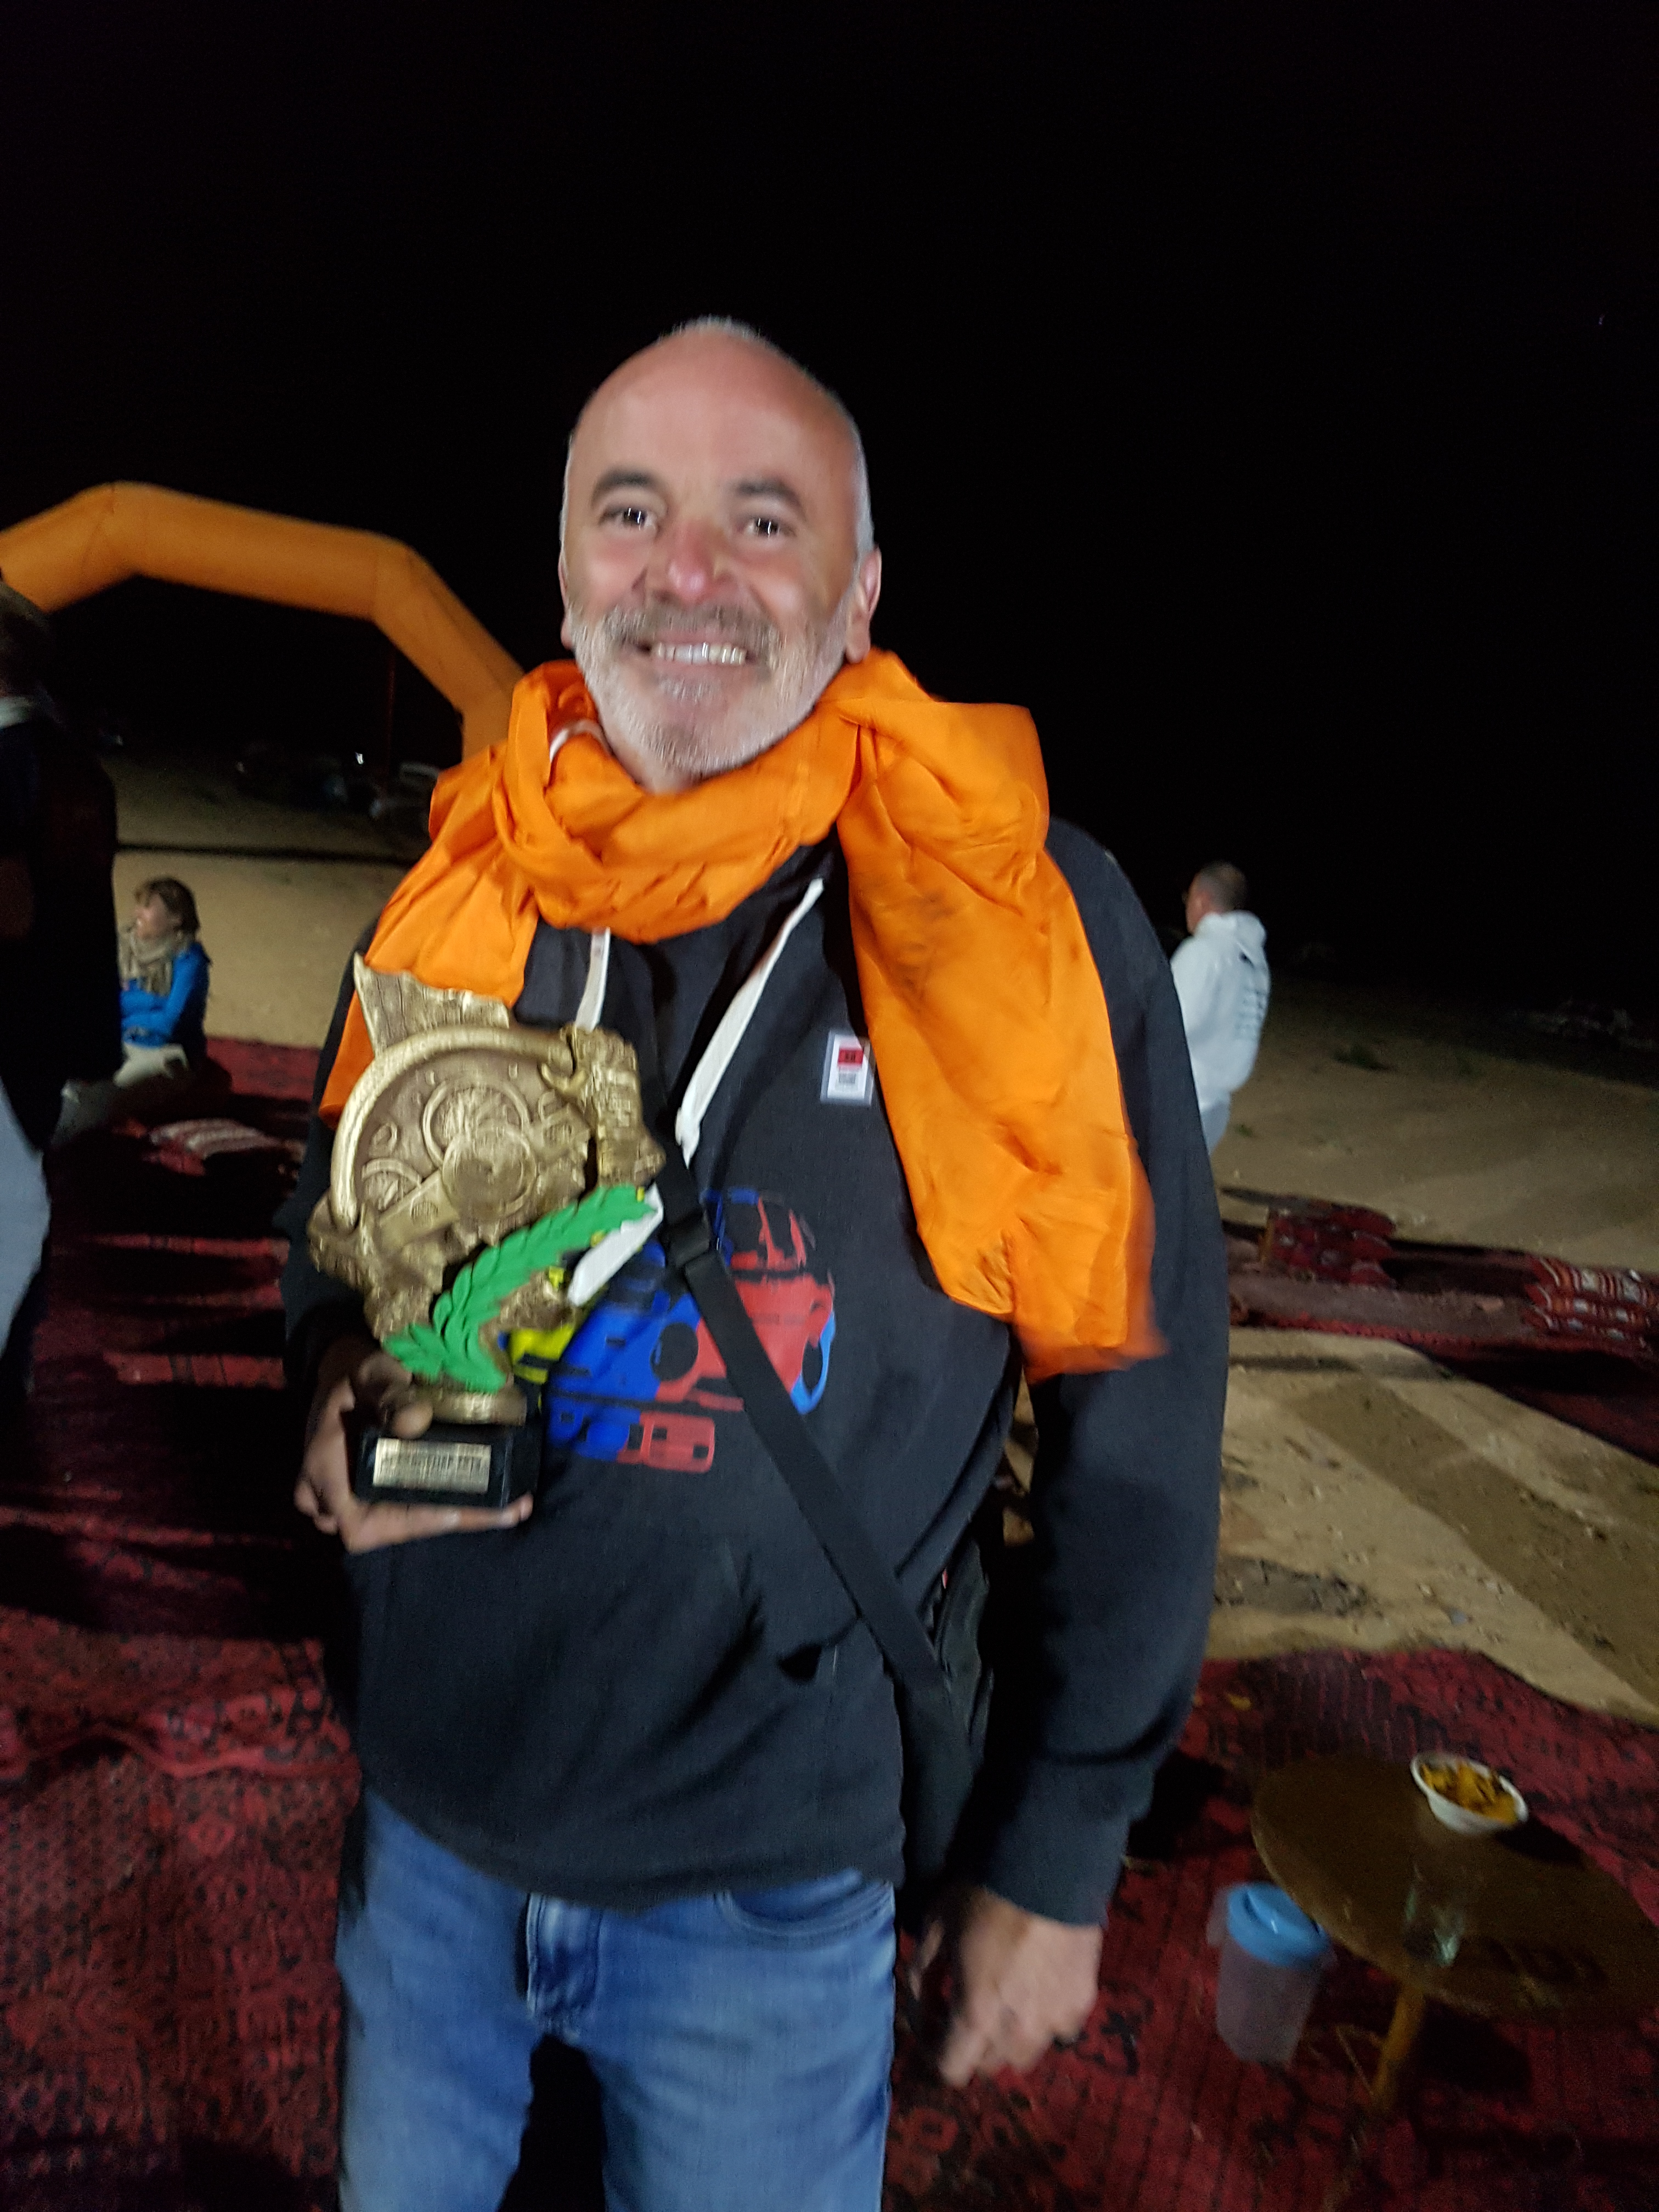 Michel Sanchez remporte le rallye raid au Maroc 205 trophée